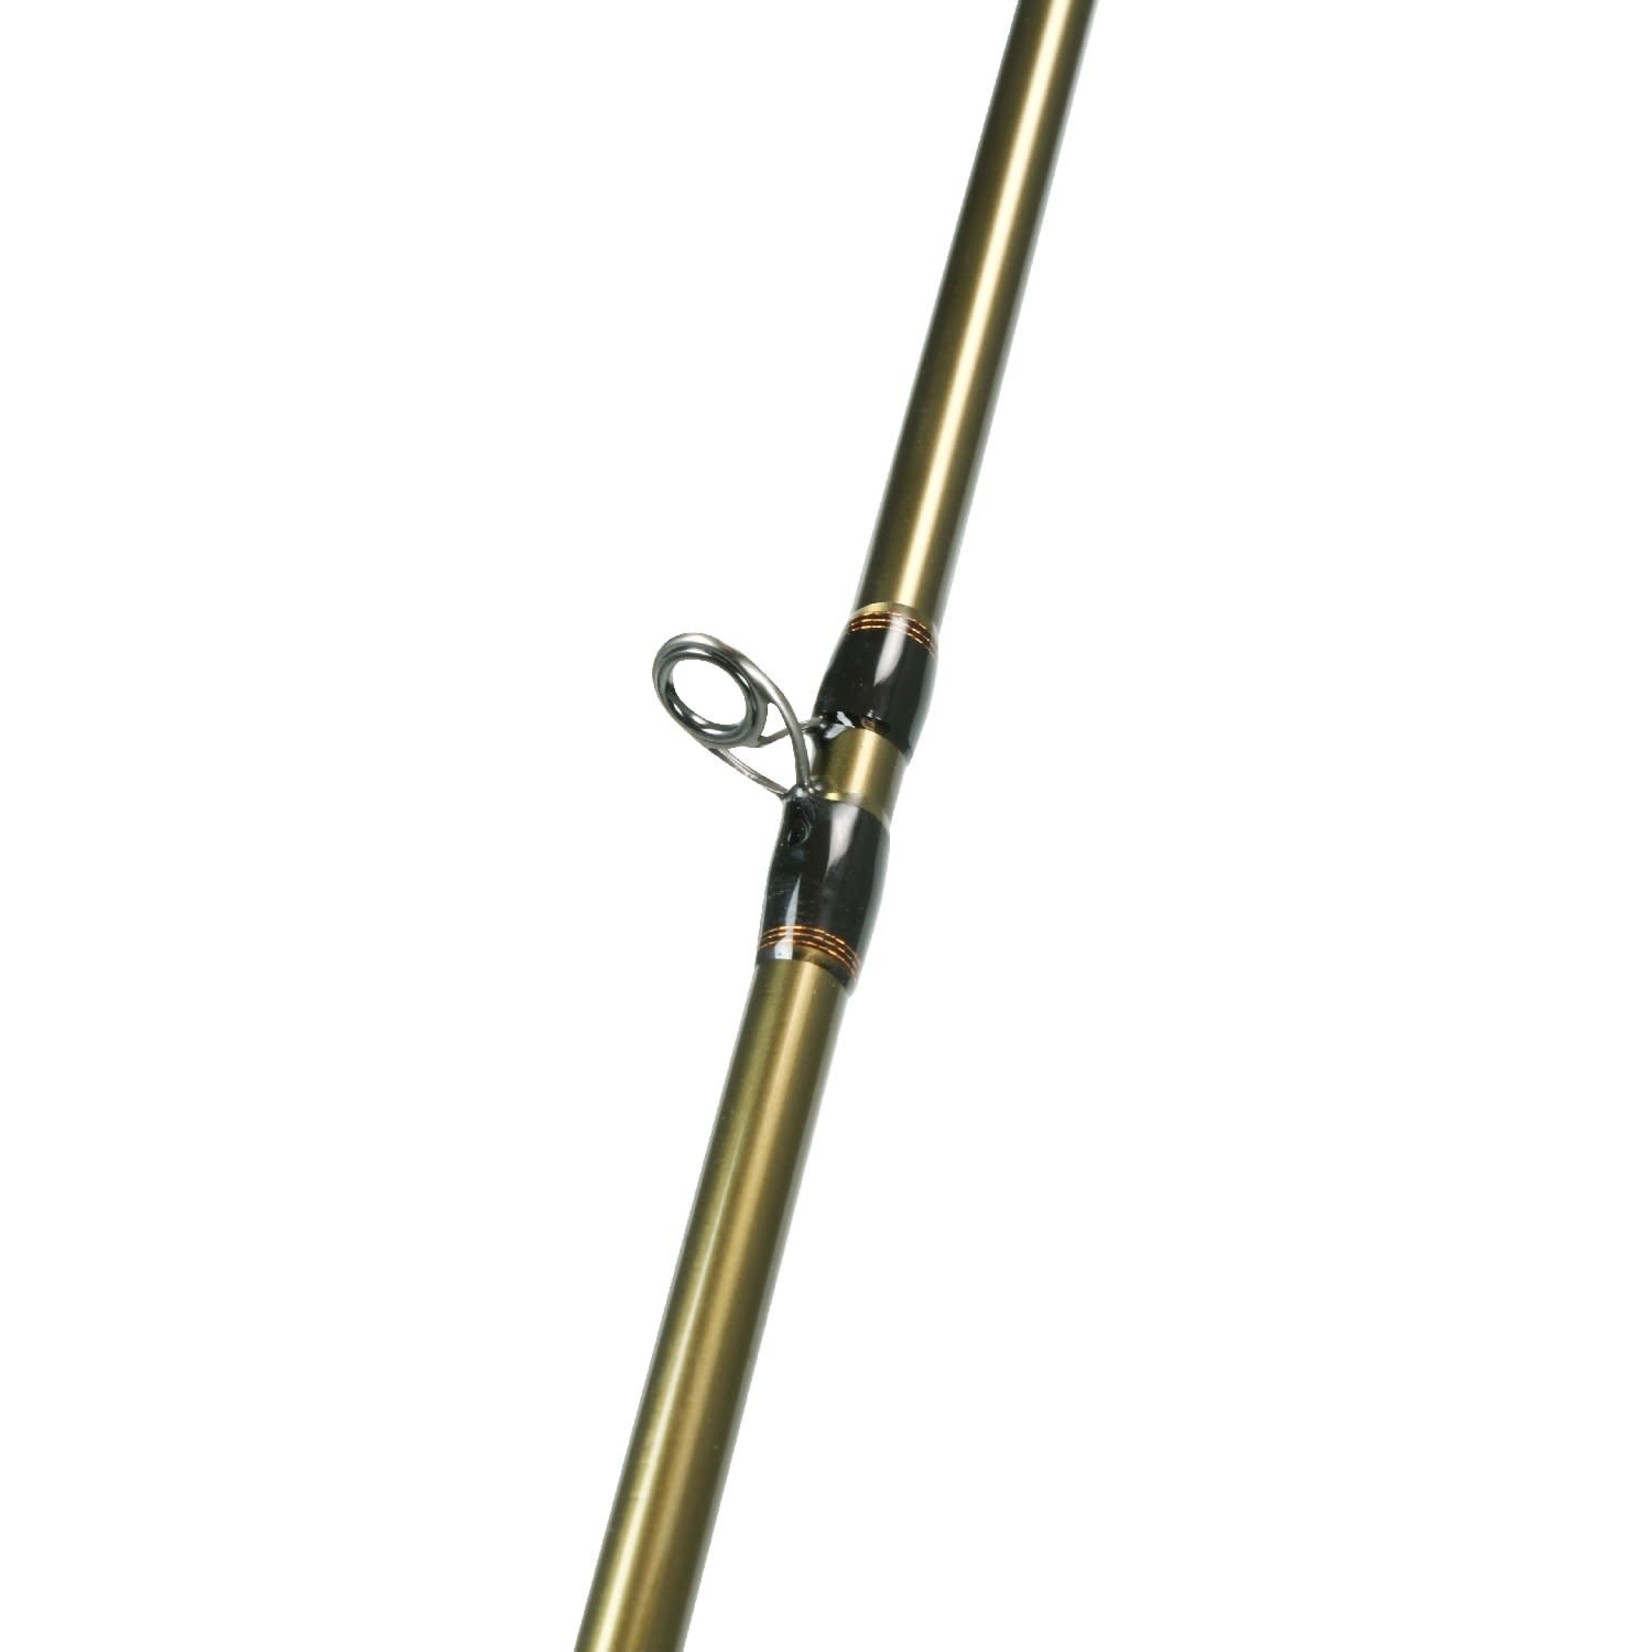 Okuma Dead Eye Custom Spinning Rod - Boutique l'Archerot